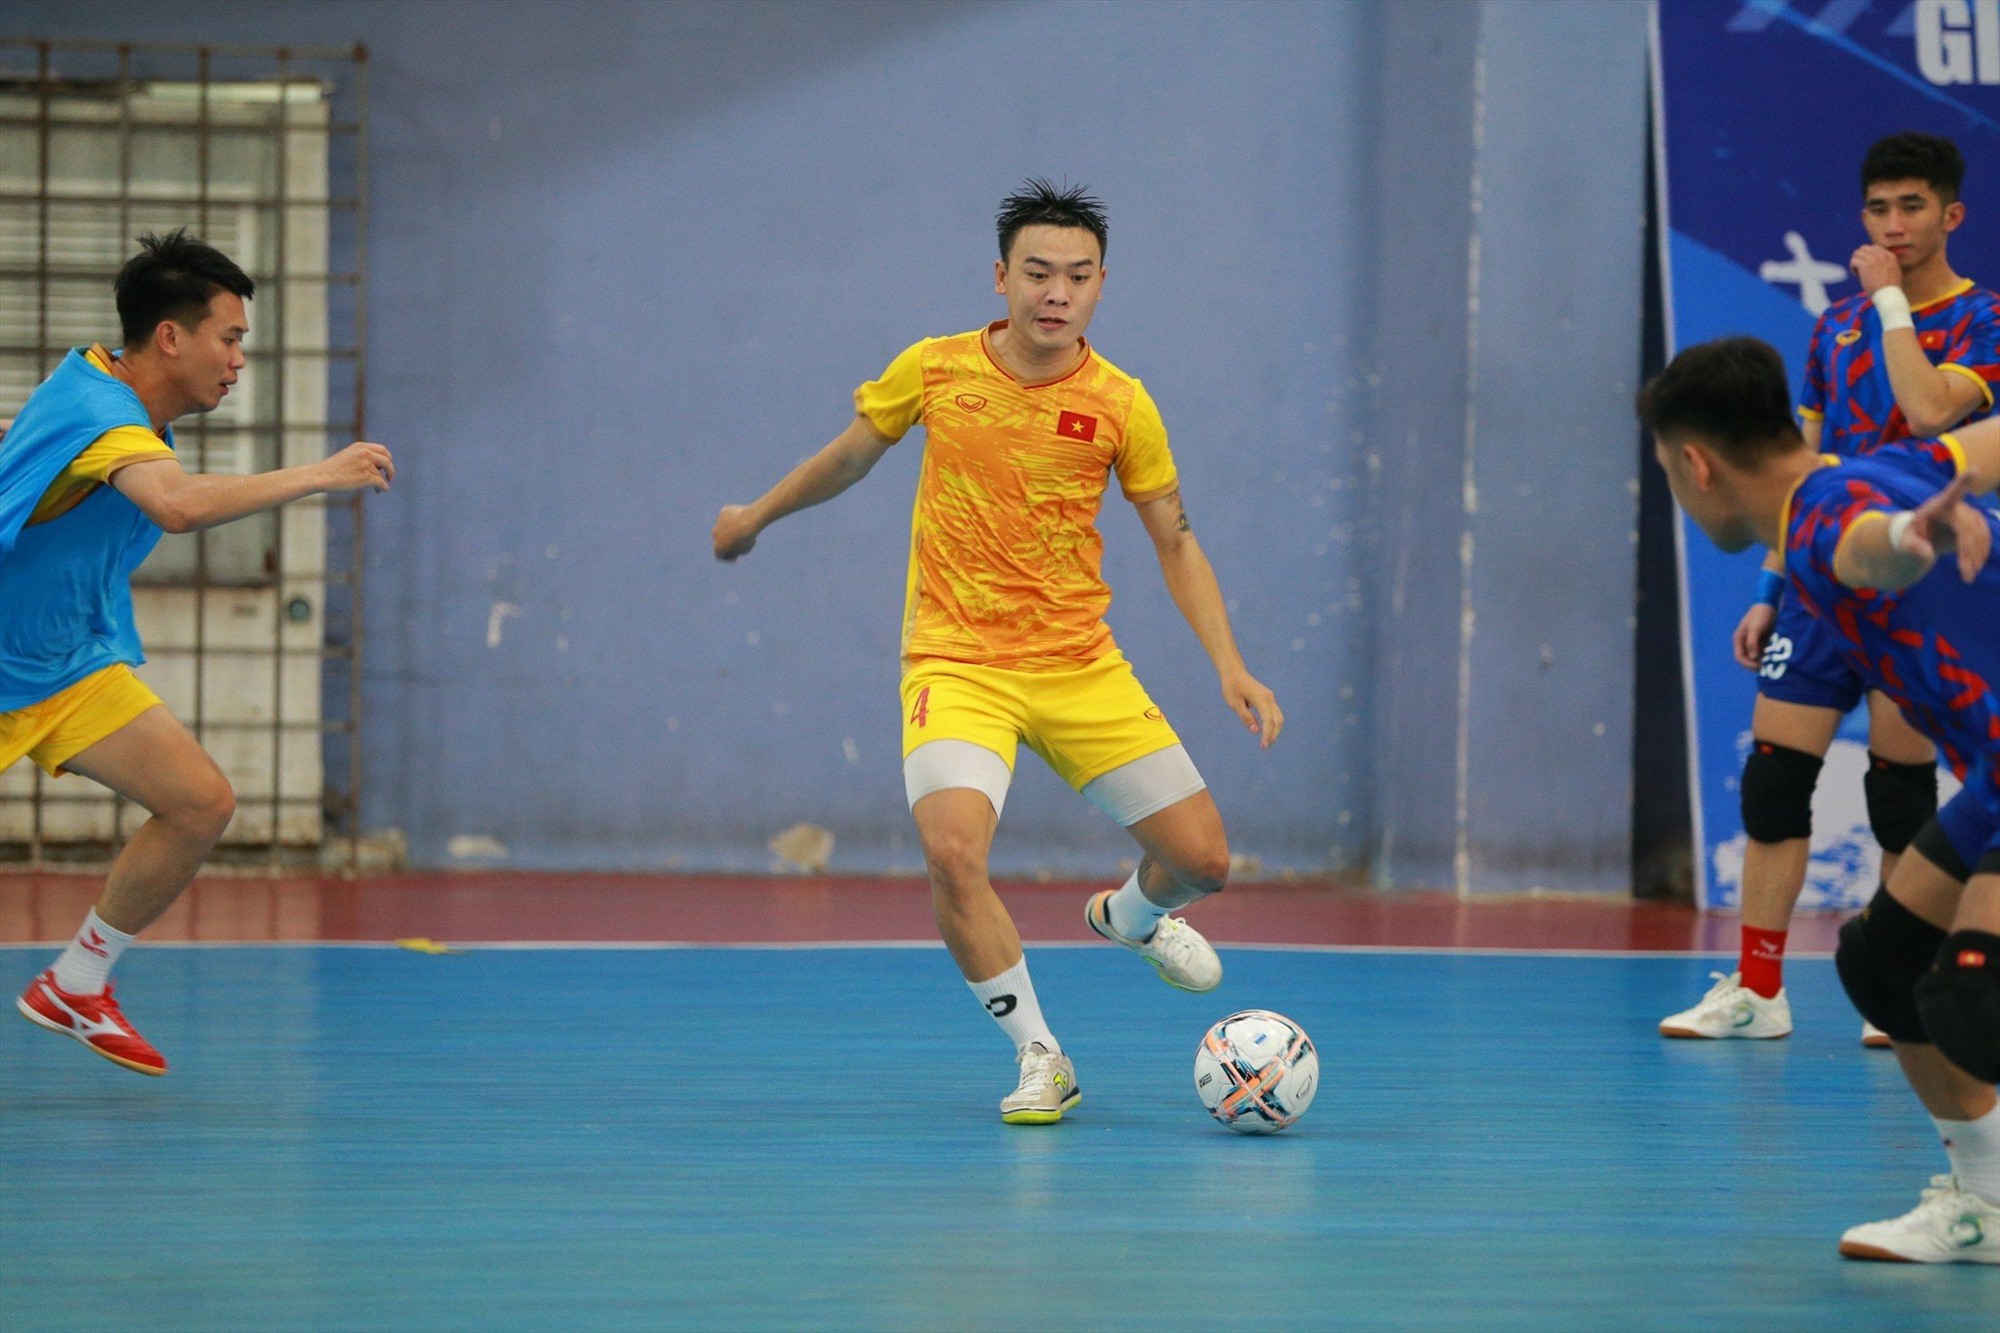 Tại vòng loại giải futsal châu Á 2024, đội tuyển futsal Việt Nam ở bảng D cùng với Hàn Quốc, Nepal và chủ nhà Mông Cổ. Đội sẽ đá trận ra quân gặp Mông Cổ vào ngày 7.10, gặp Nepal vào ngày 9.10 và gặp Hàn Quốc vào ngày 11.10. Mục tiêu của đội tuyển futsal Việt Nam là giành ngôi nhất bảng.